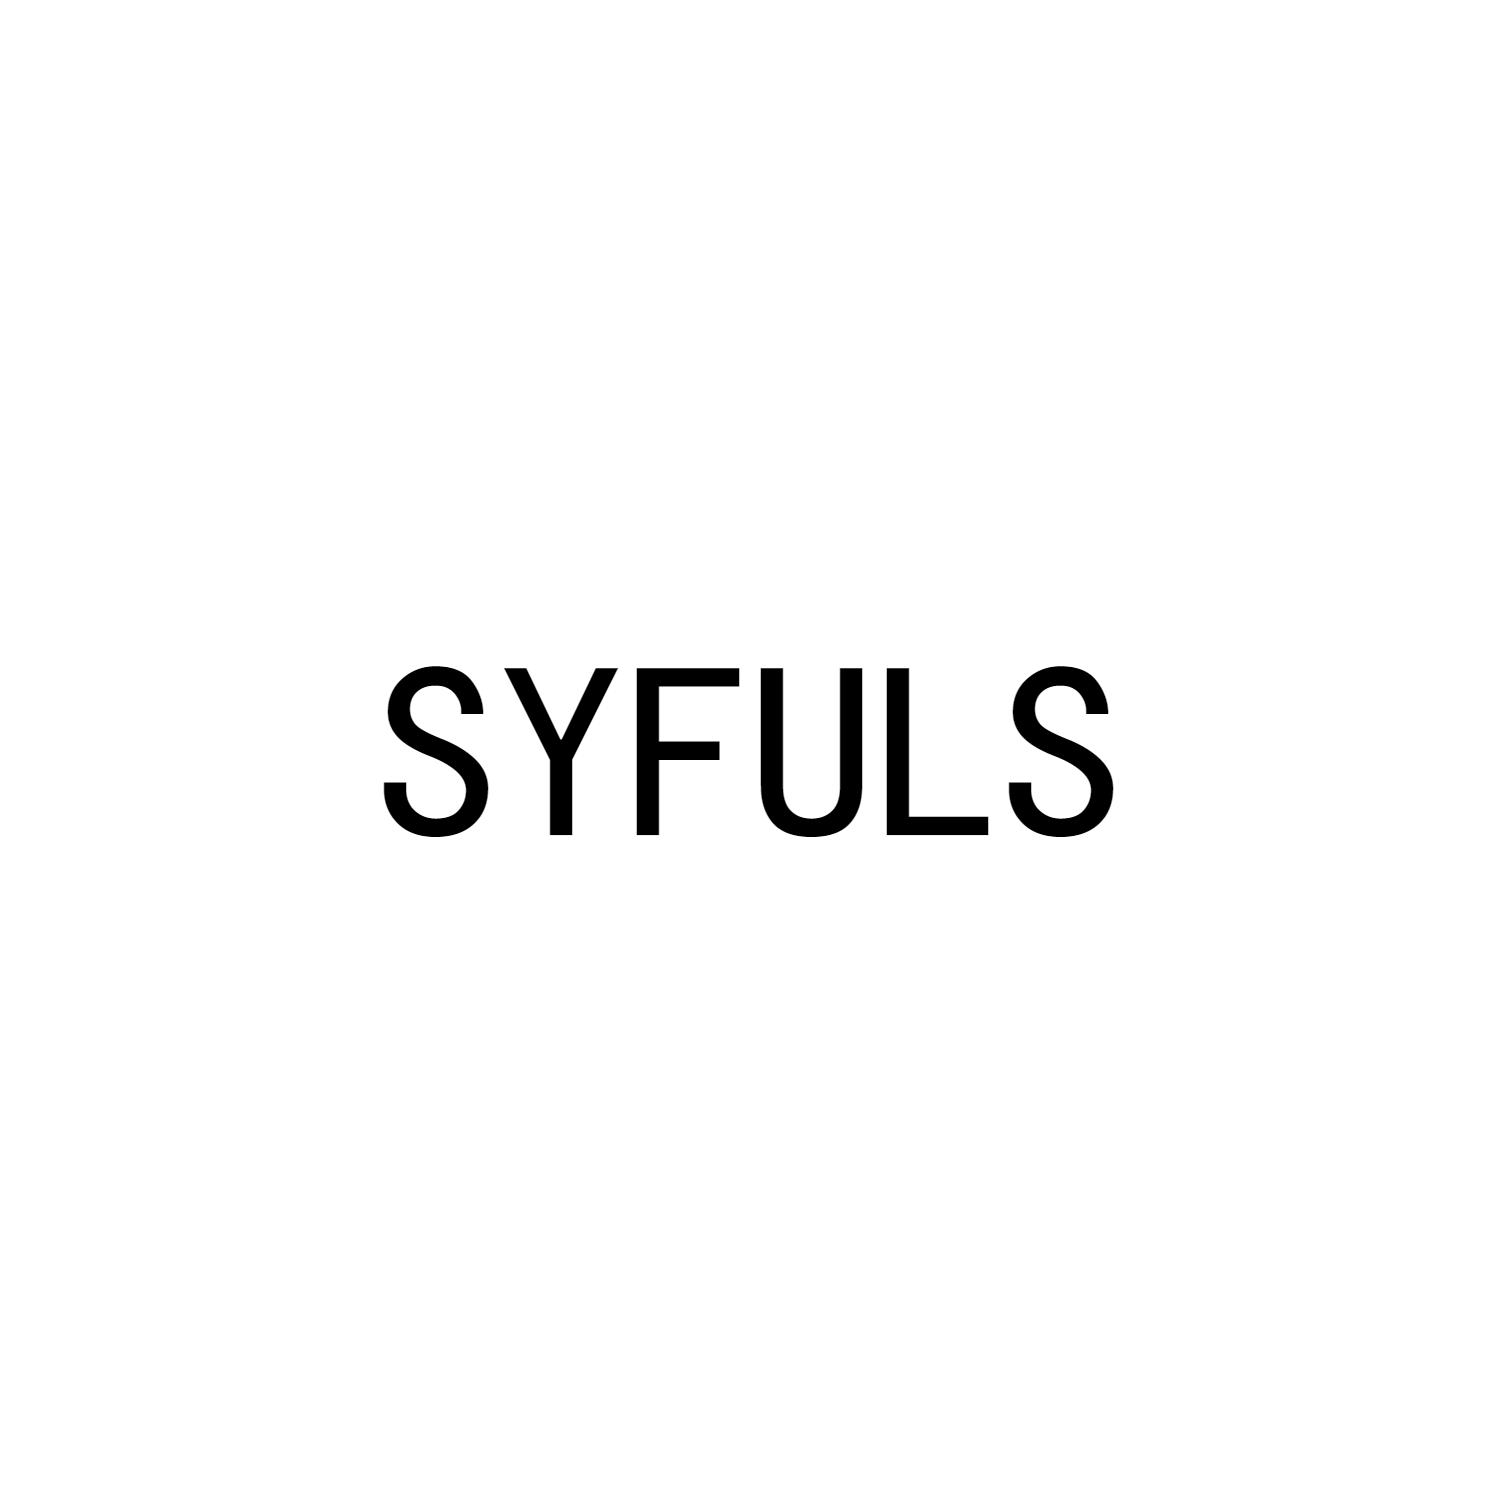 SYFULS